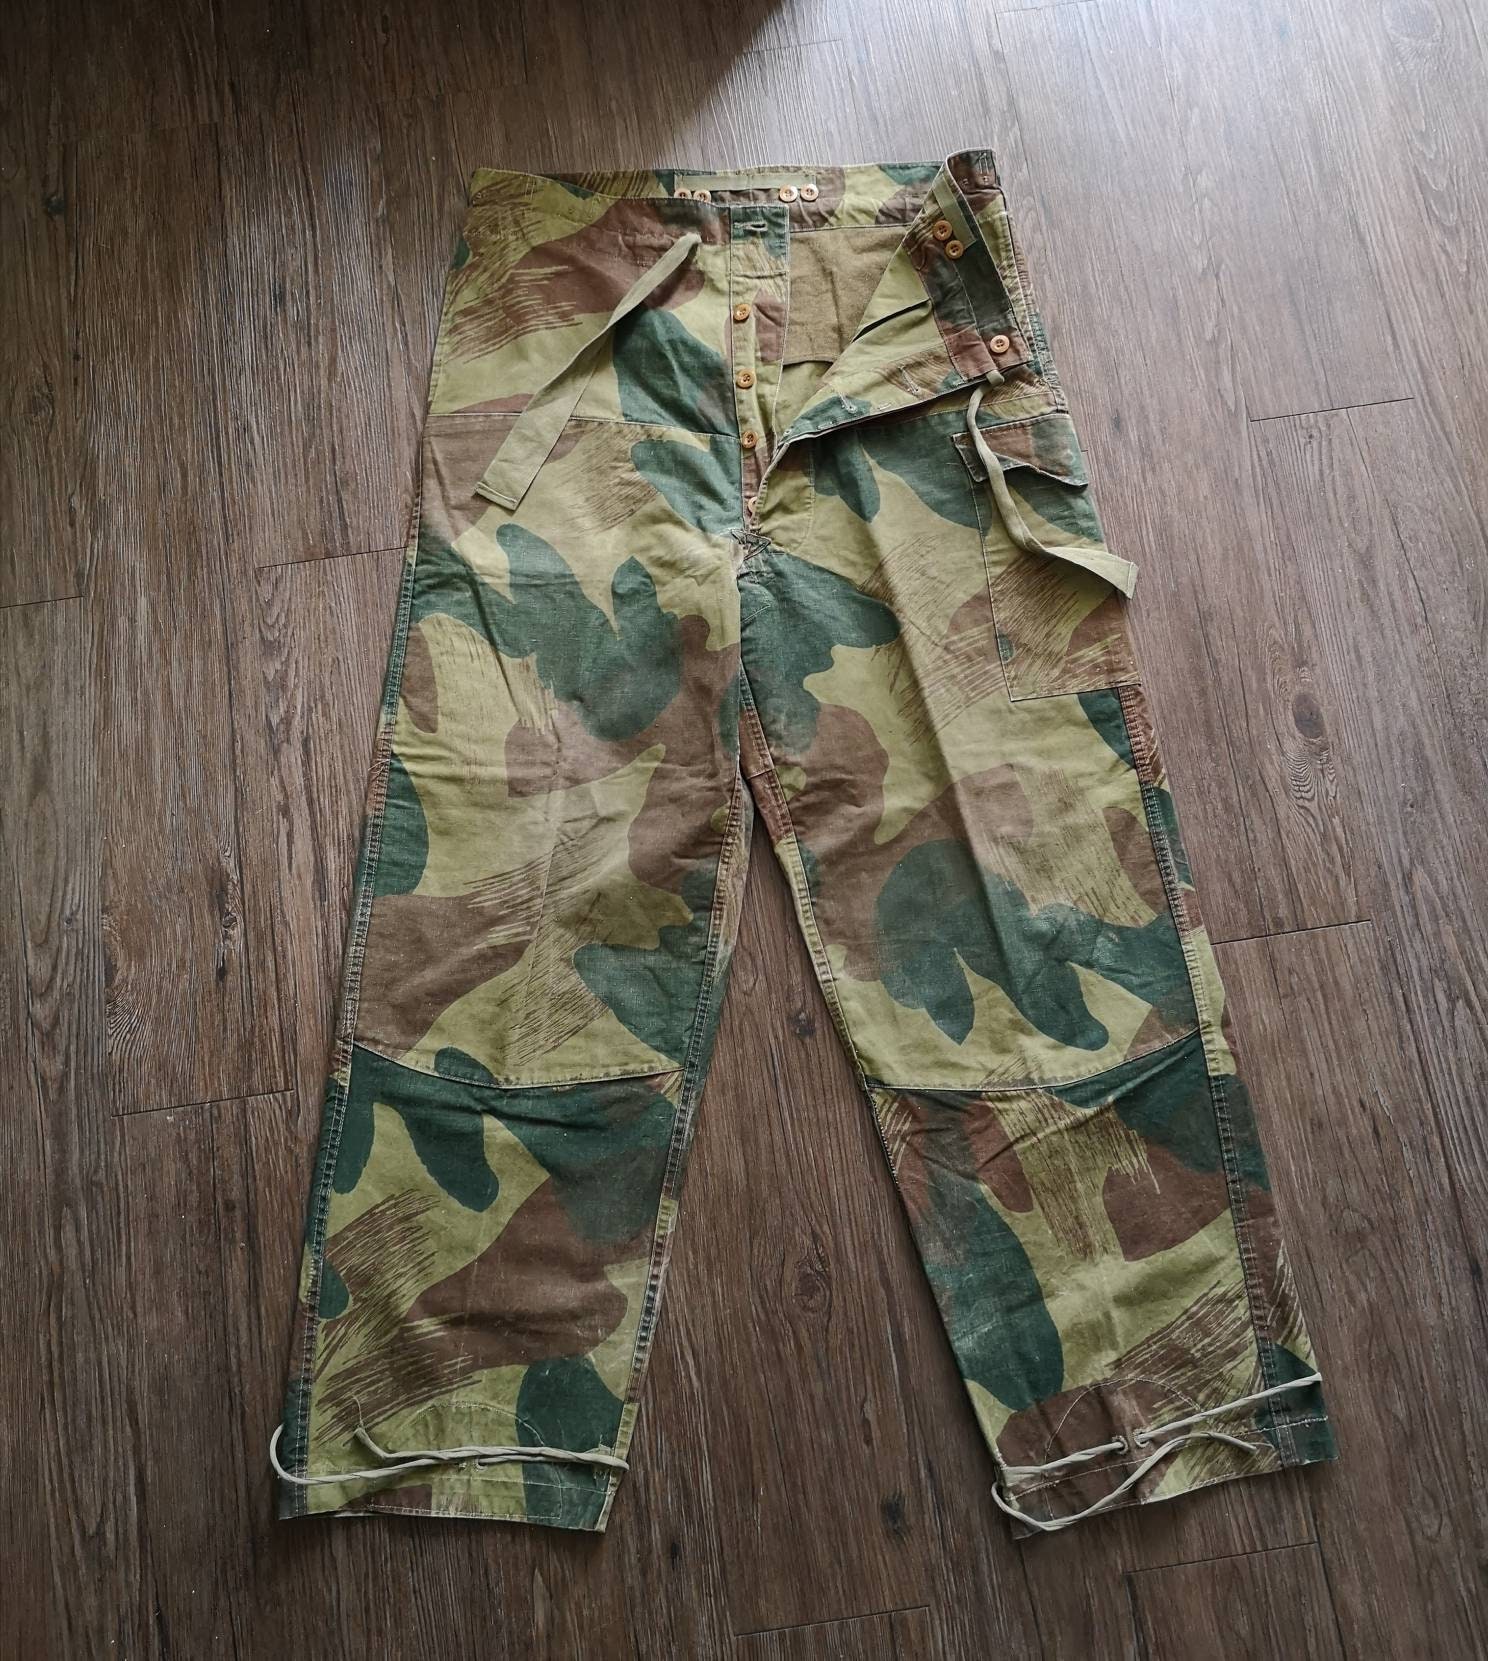 大阪オンライン Belgium army field trousers vintage ワークパンツ/カーゴパンツ